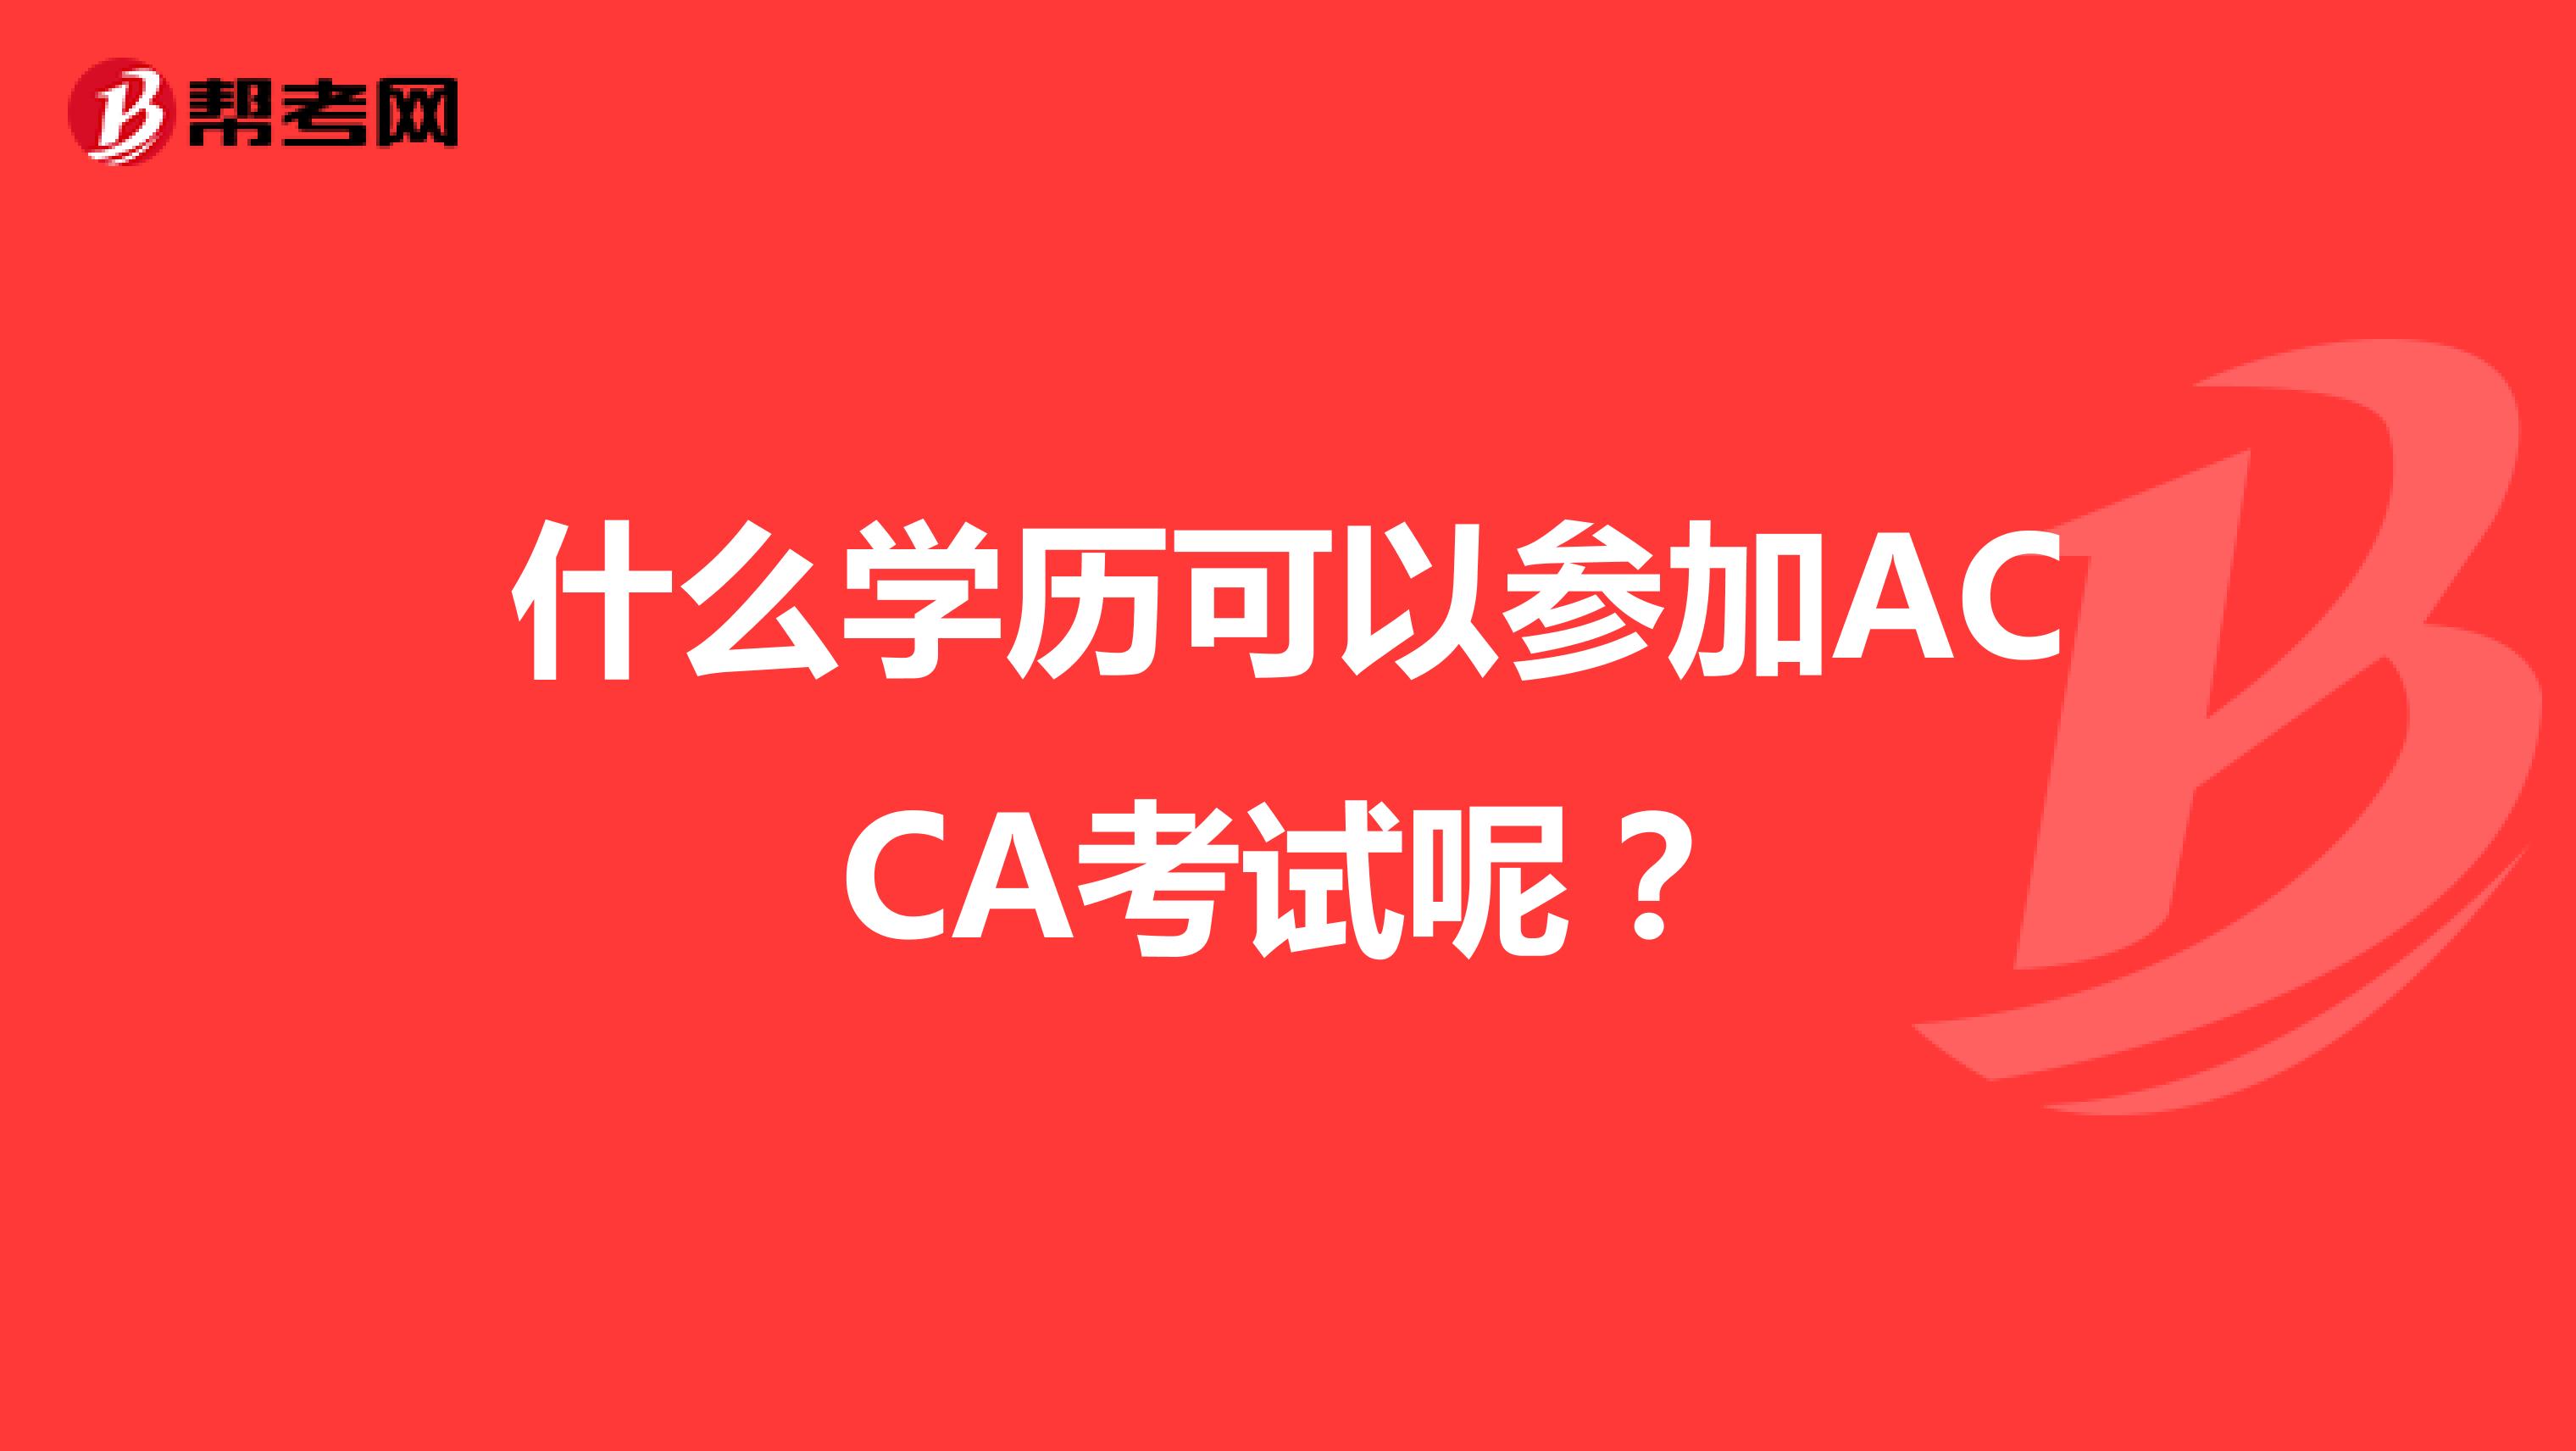 什么学历可以参加ACCA考试呢？